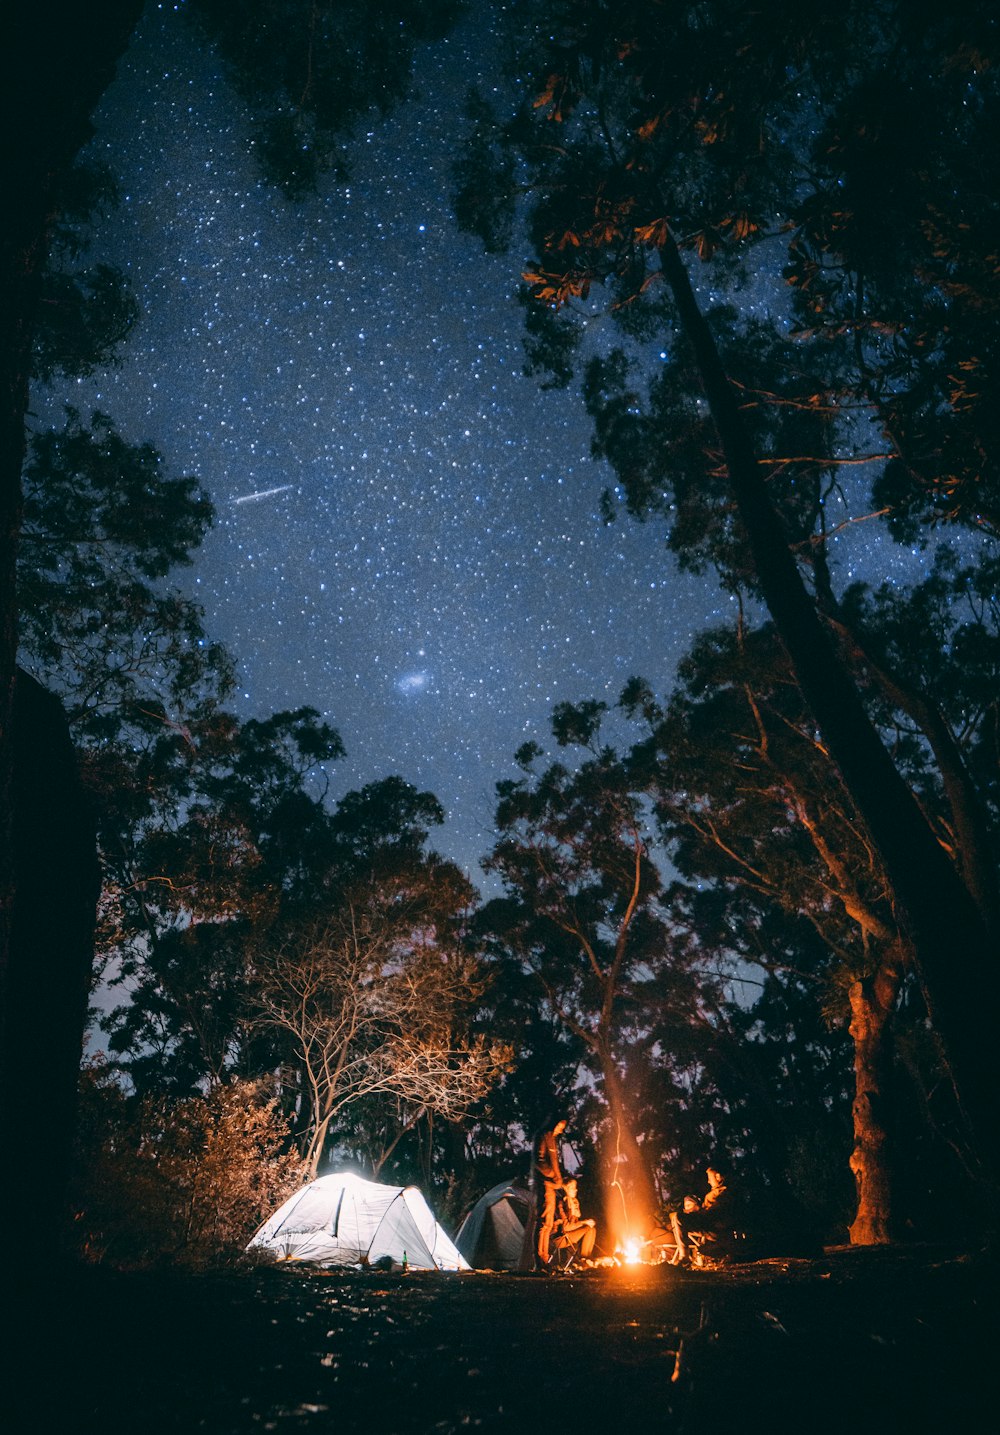 Person, die in der Nähe eines Lagerfeuers sitzt, umgeben von Bäumen